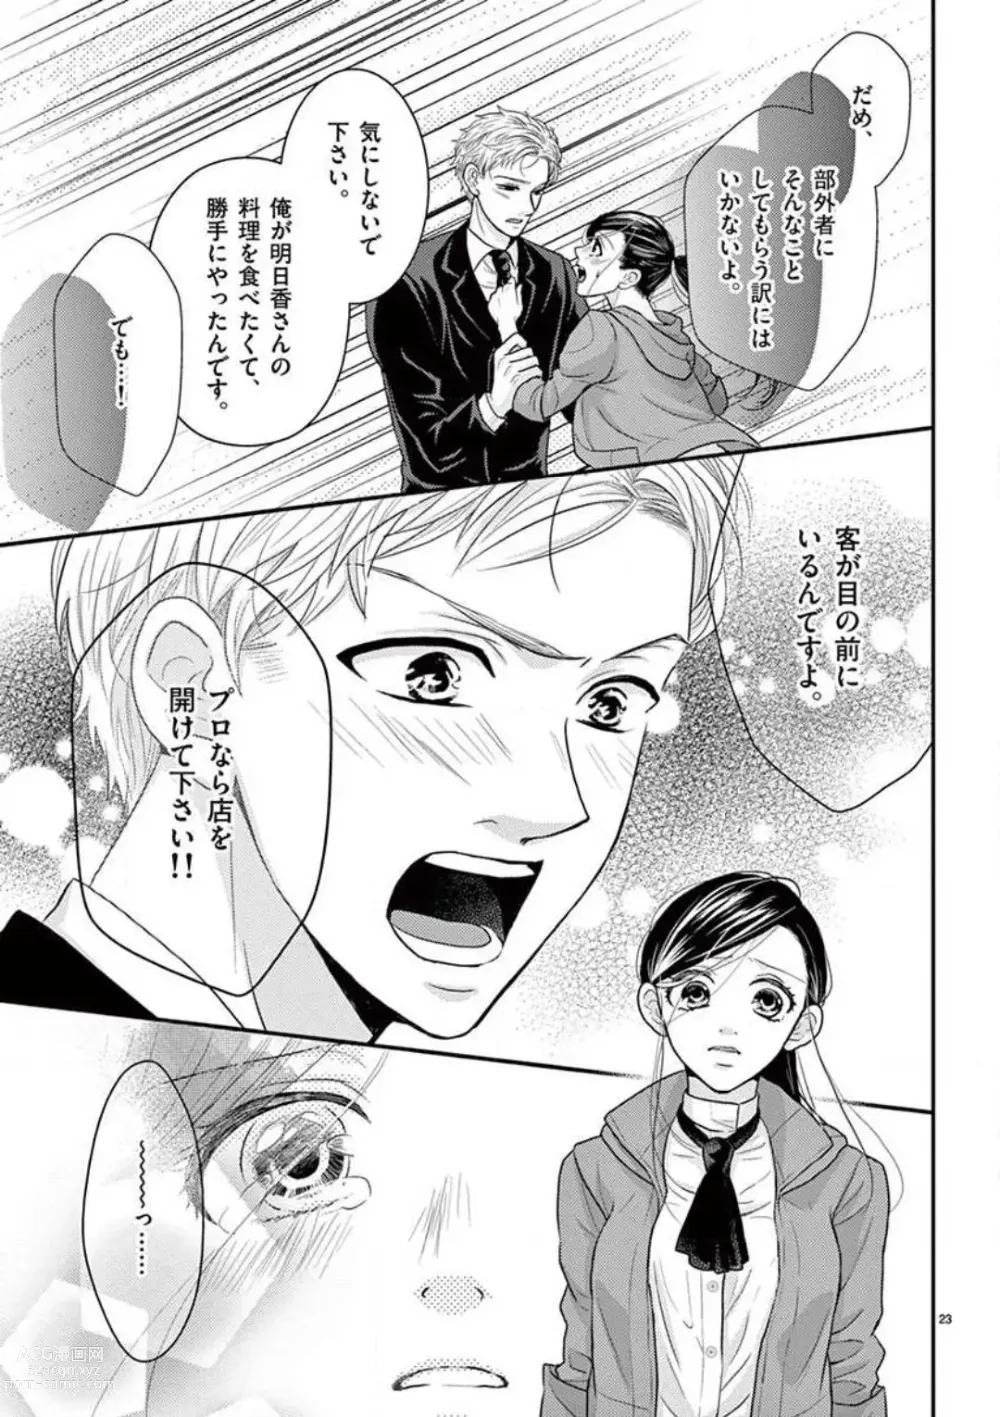 Page 23 of manga Yajū Suitchi ON!〜 Junjō Wanko wa Hageshi Sugi 〜